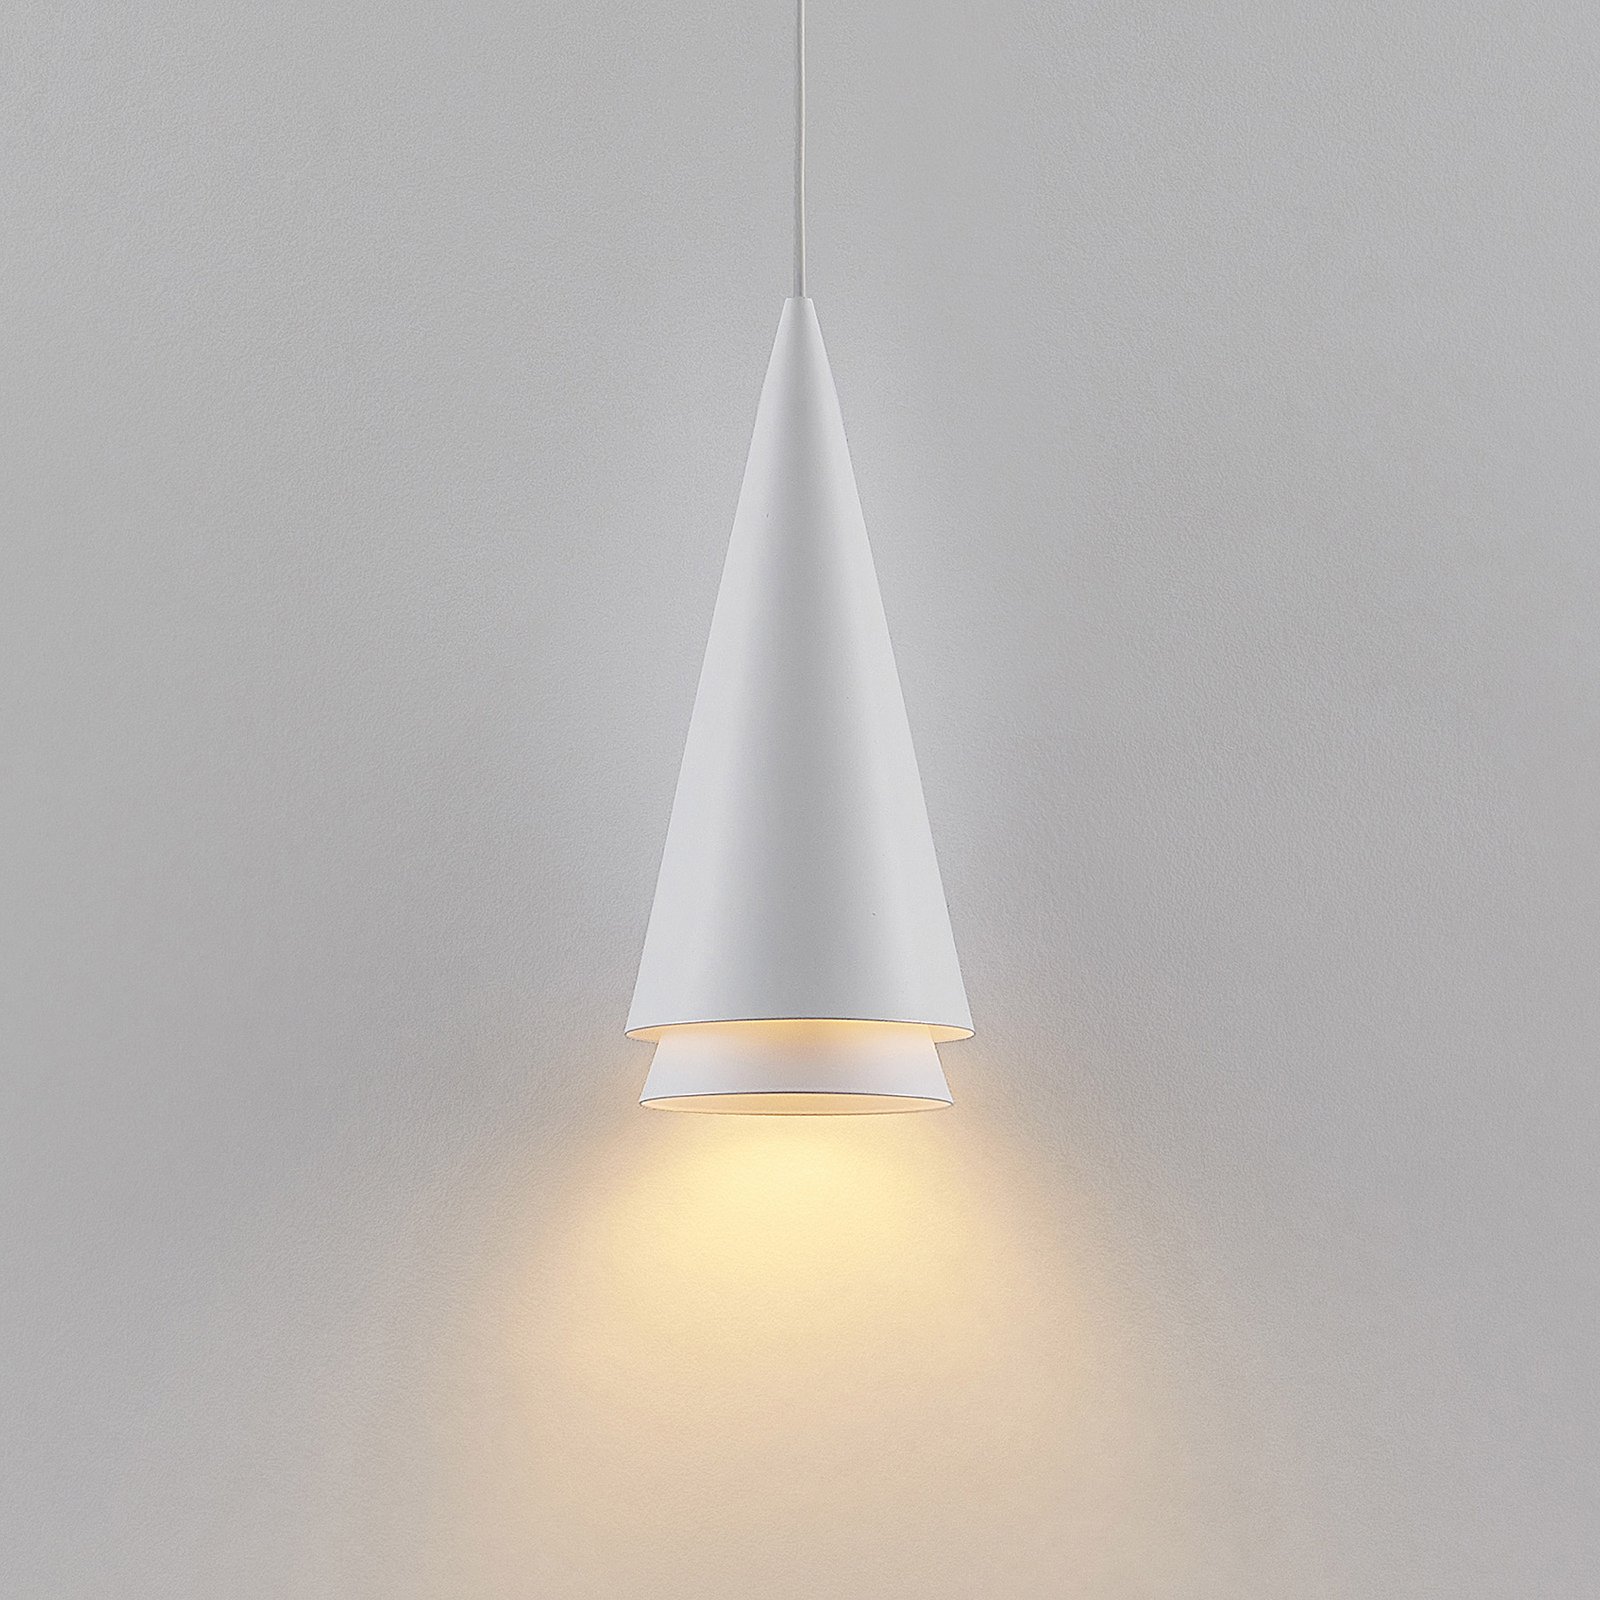 Lucande Naoh hanging light 1-bulb white